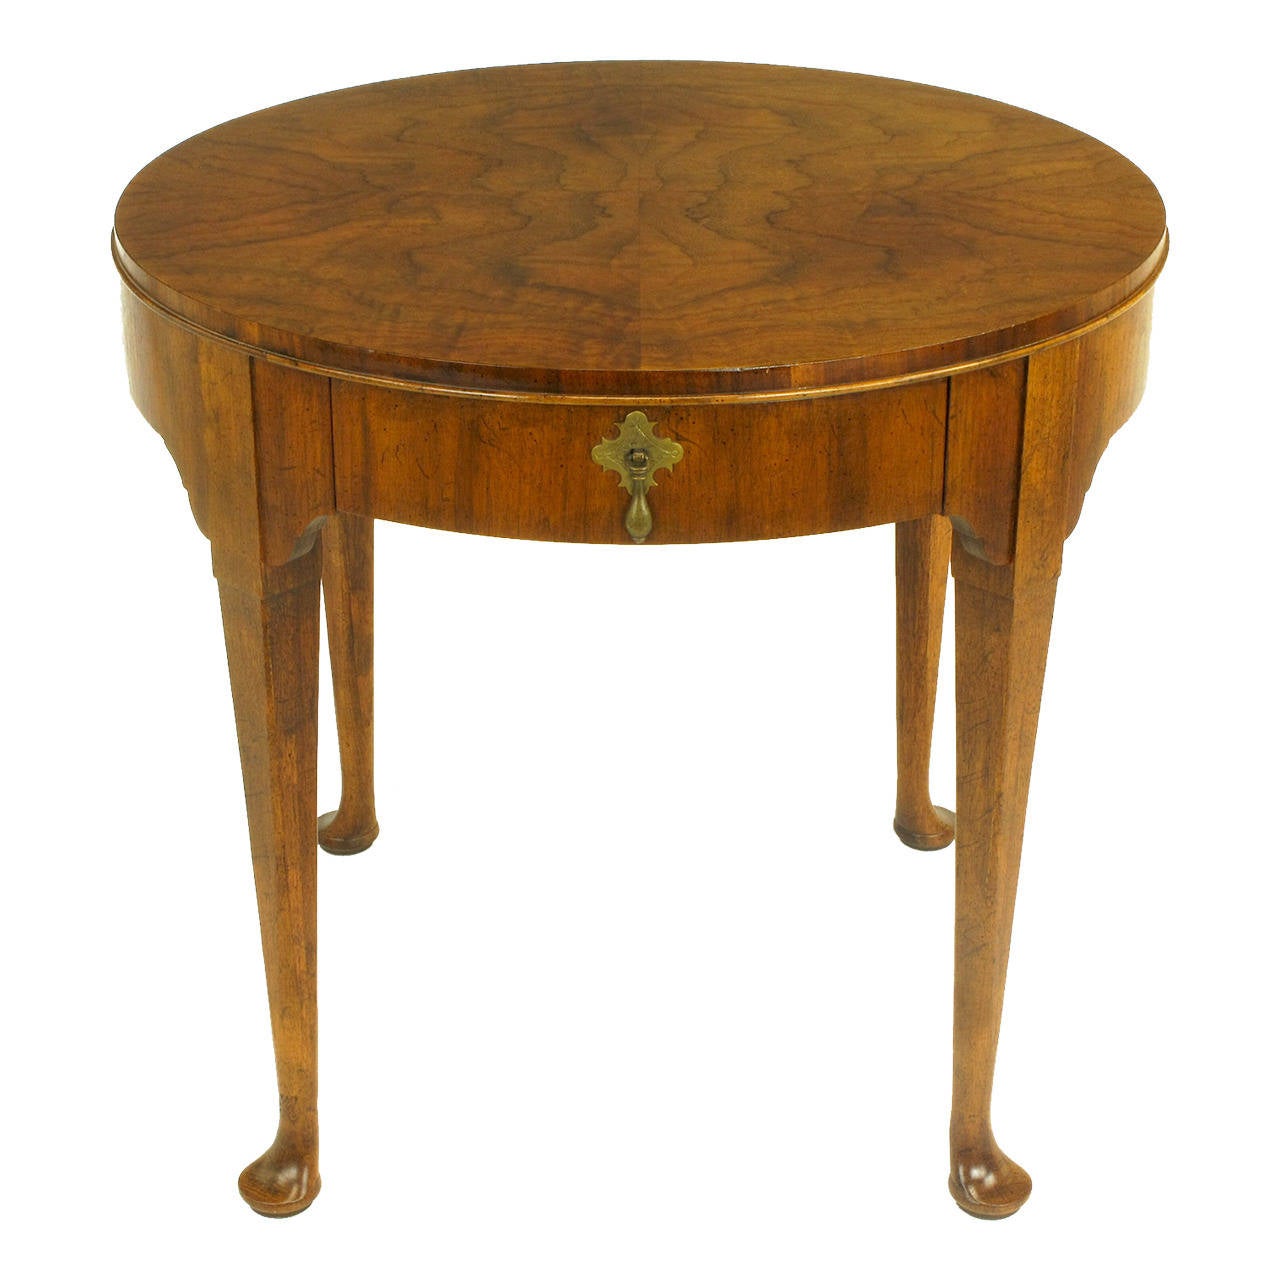 Baker Furniture "Milling Road" Figured Walnut Regency Side Table For Sale at 1stdibs